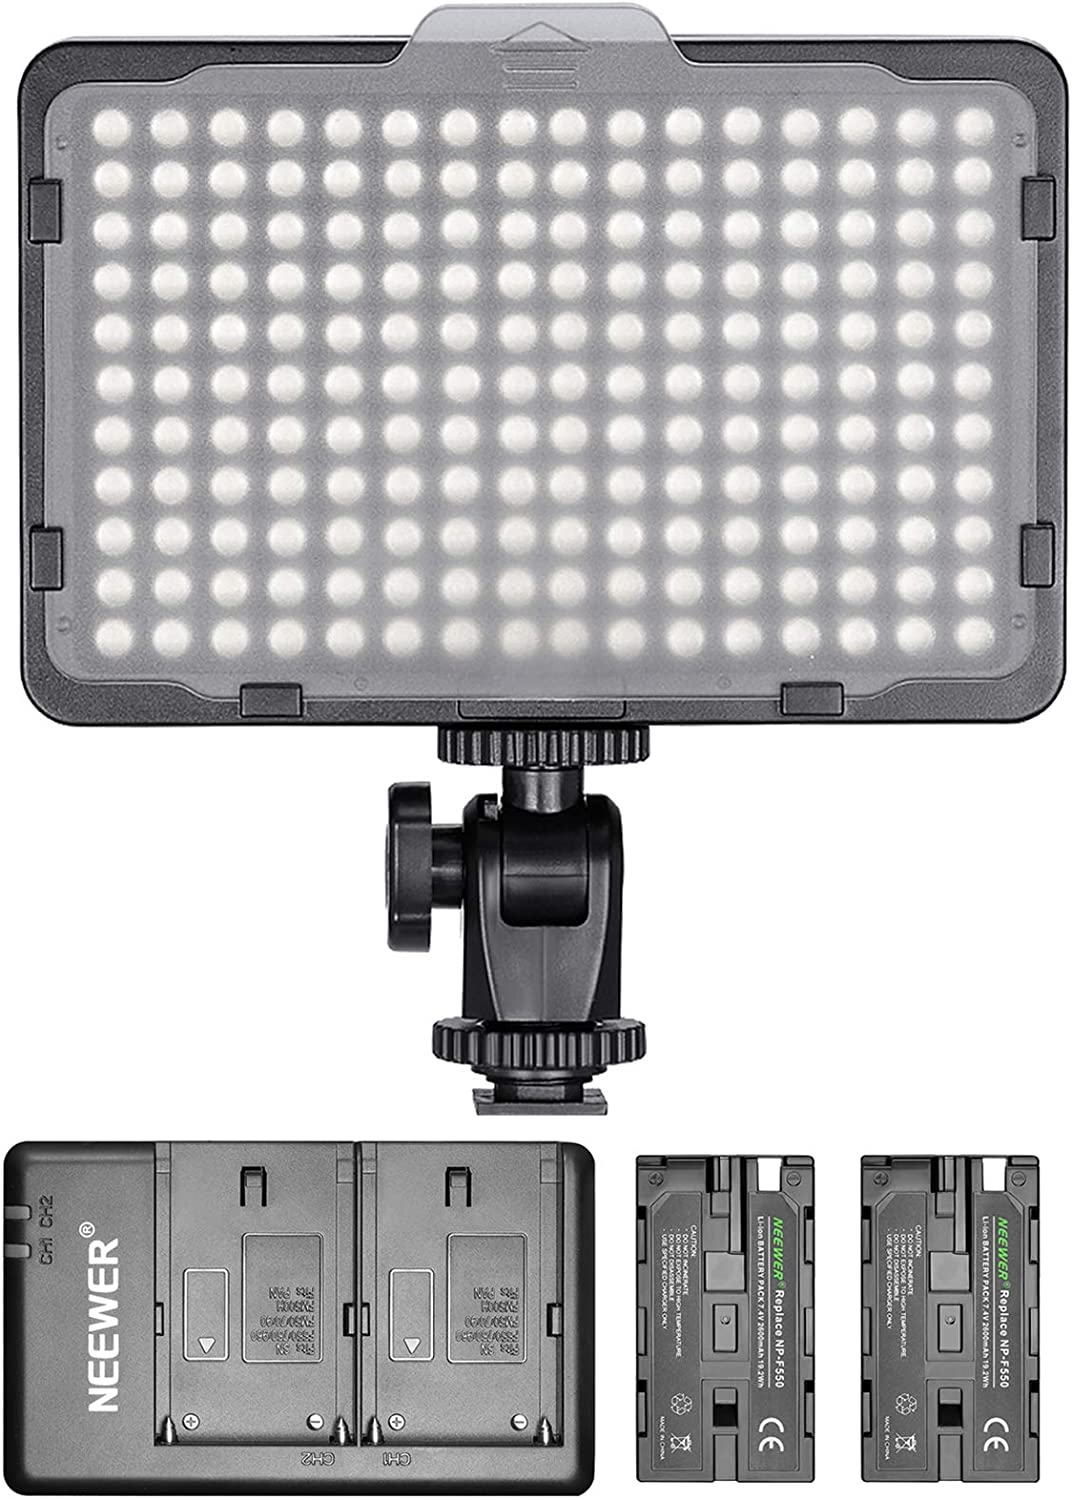 Neewer Luz de video regulable de 176 LED con paquete de 2 baterías de iones de litio de 2600 mAh y cargador de batería USB dual, kit de iluminación para Canon, Nikon y otras cámaras digitales SLR para estudio fotográfico y grabación de video